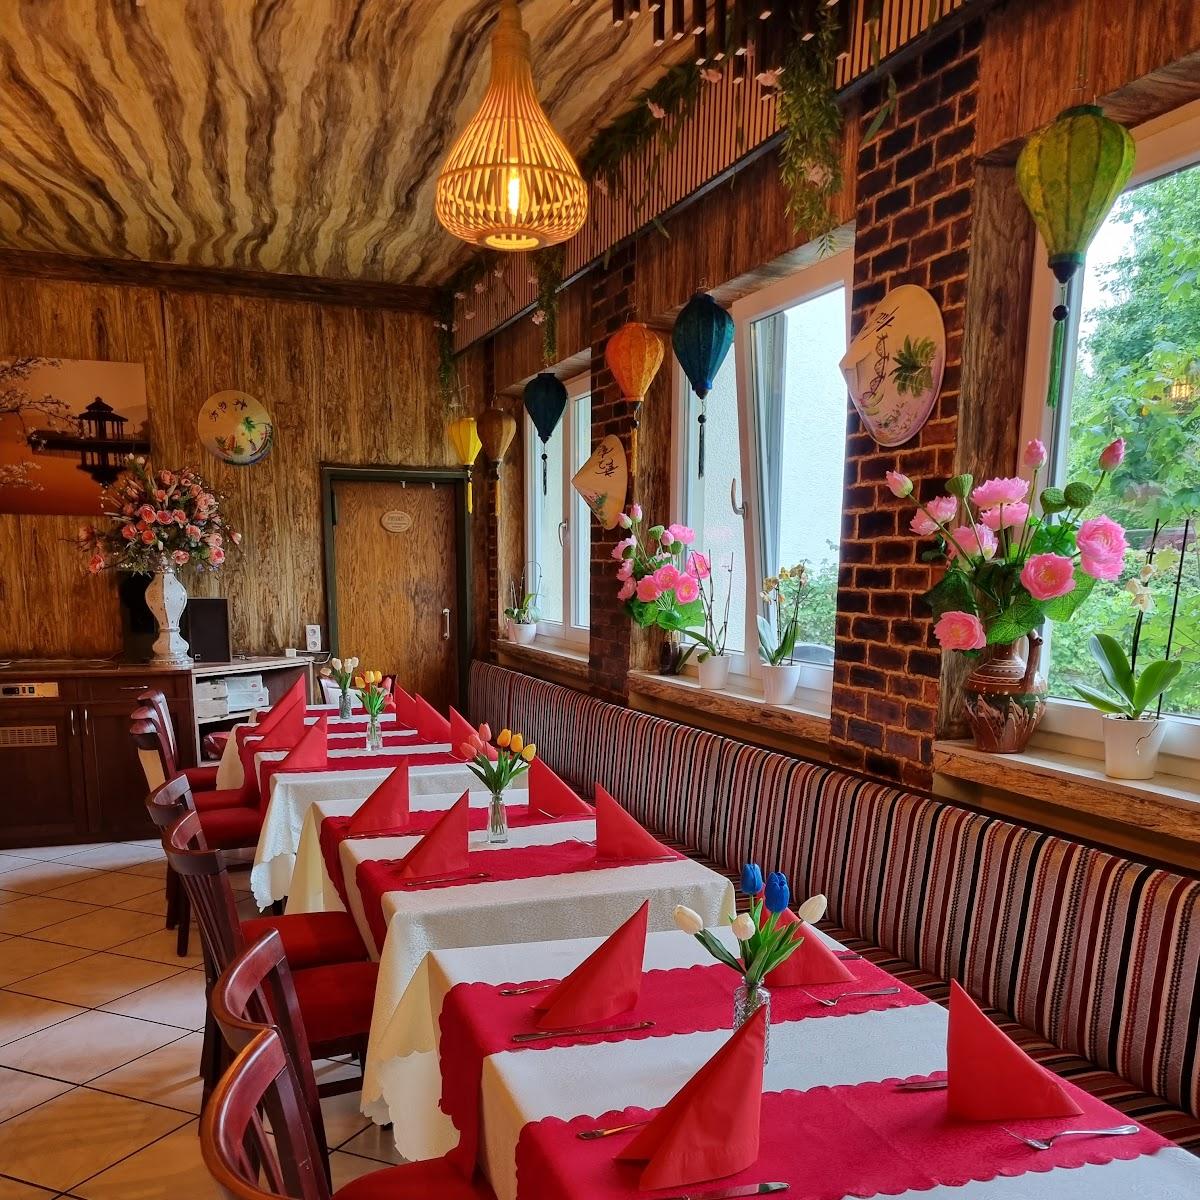 Restaurant "ipho-vietnamese-cuisine" in Bad Tölz